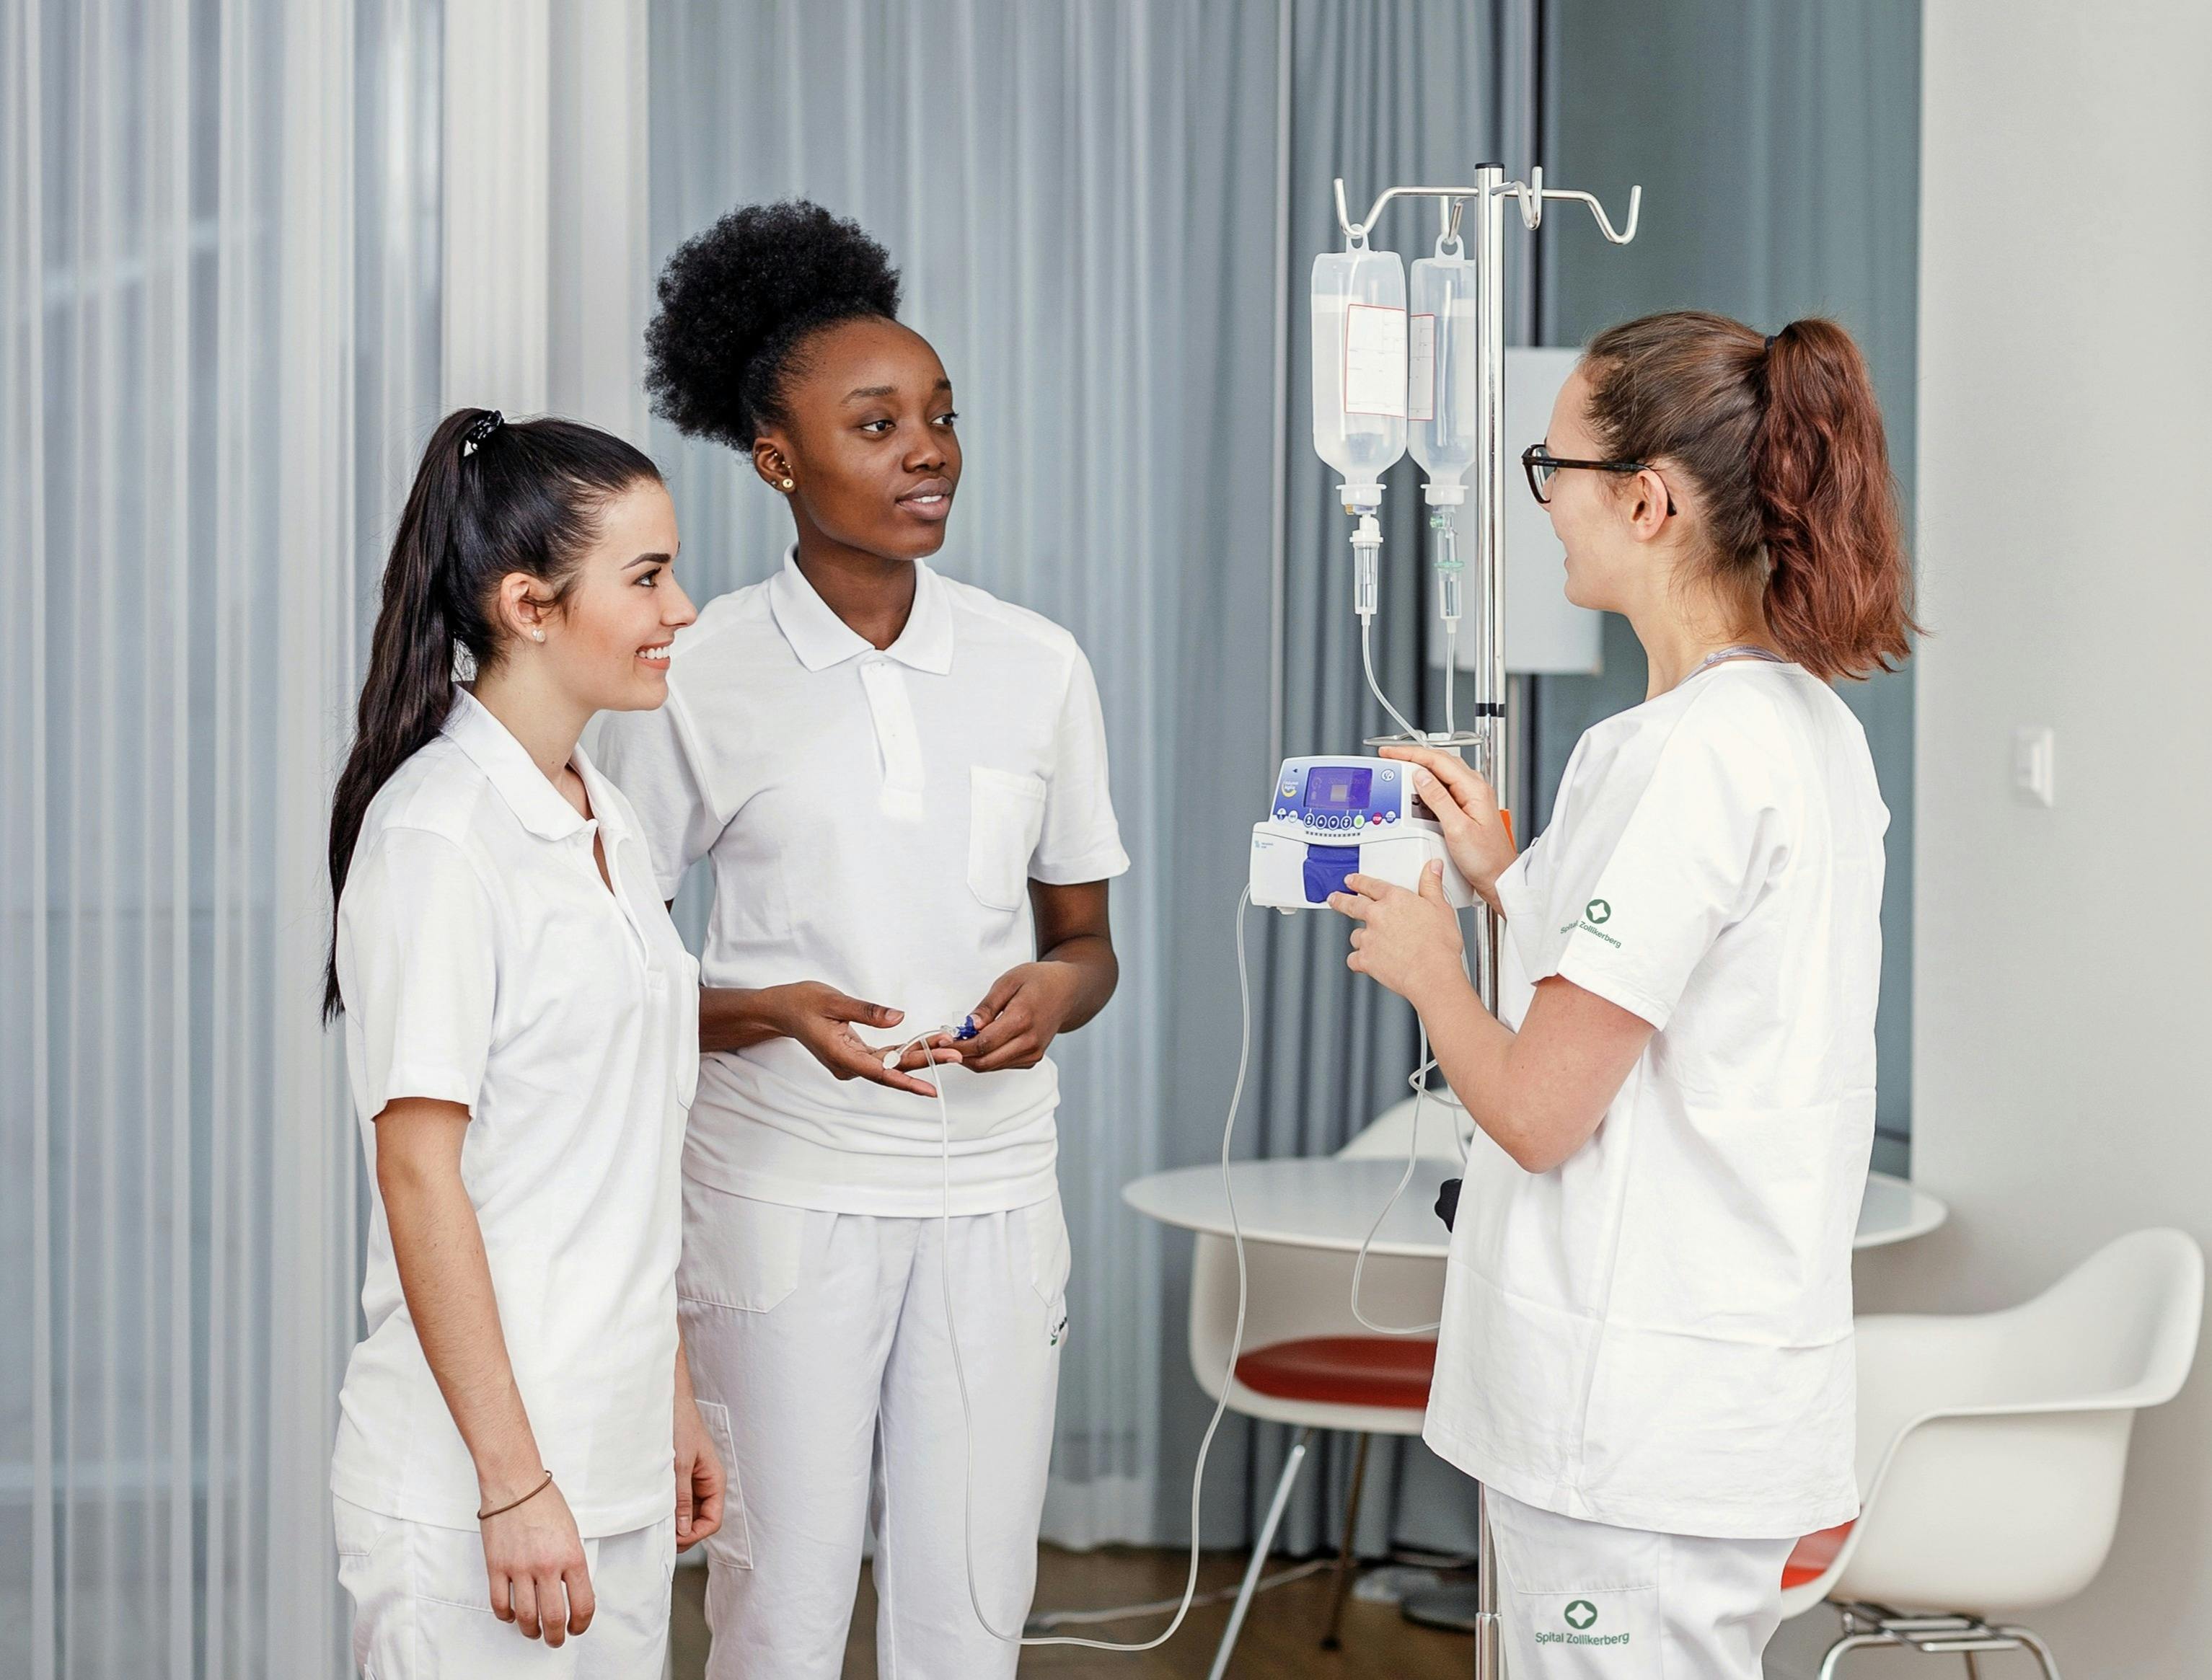 Drei Krankenpflegerinnen in weisser Berufskleidung unterhalten sich in einem Spitalzimmer.